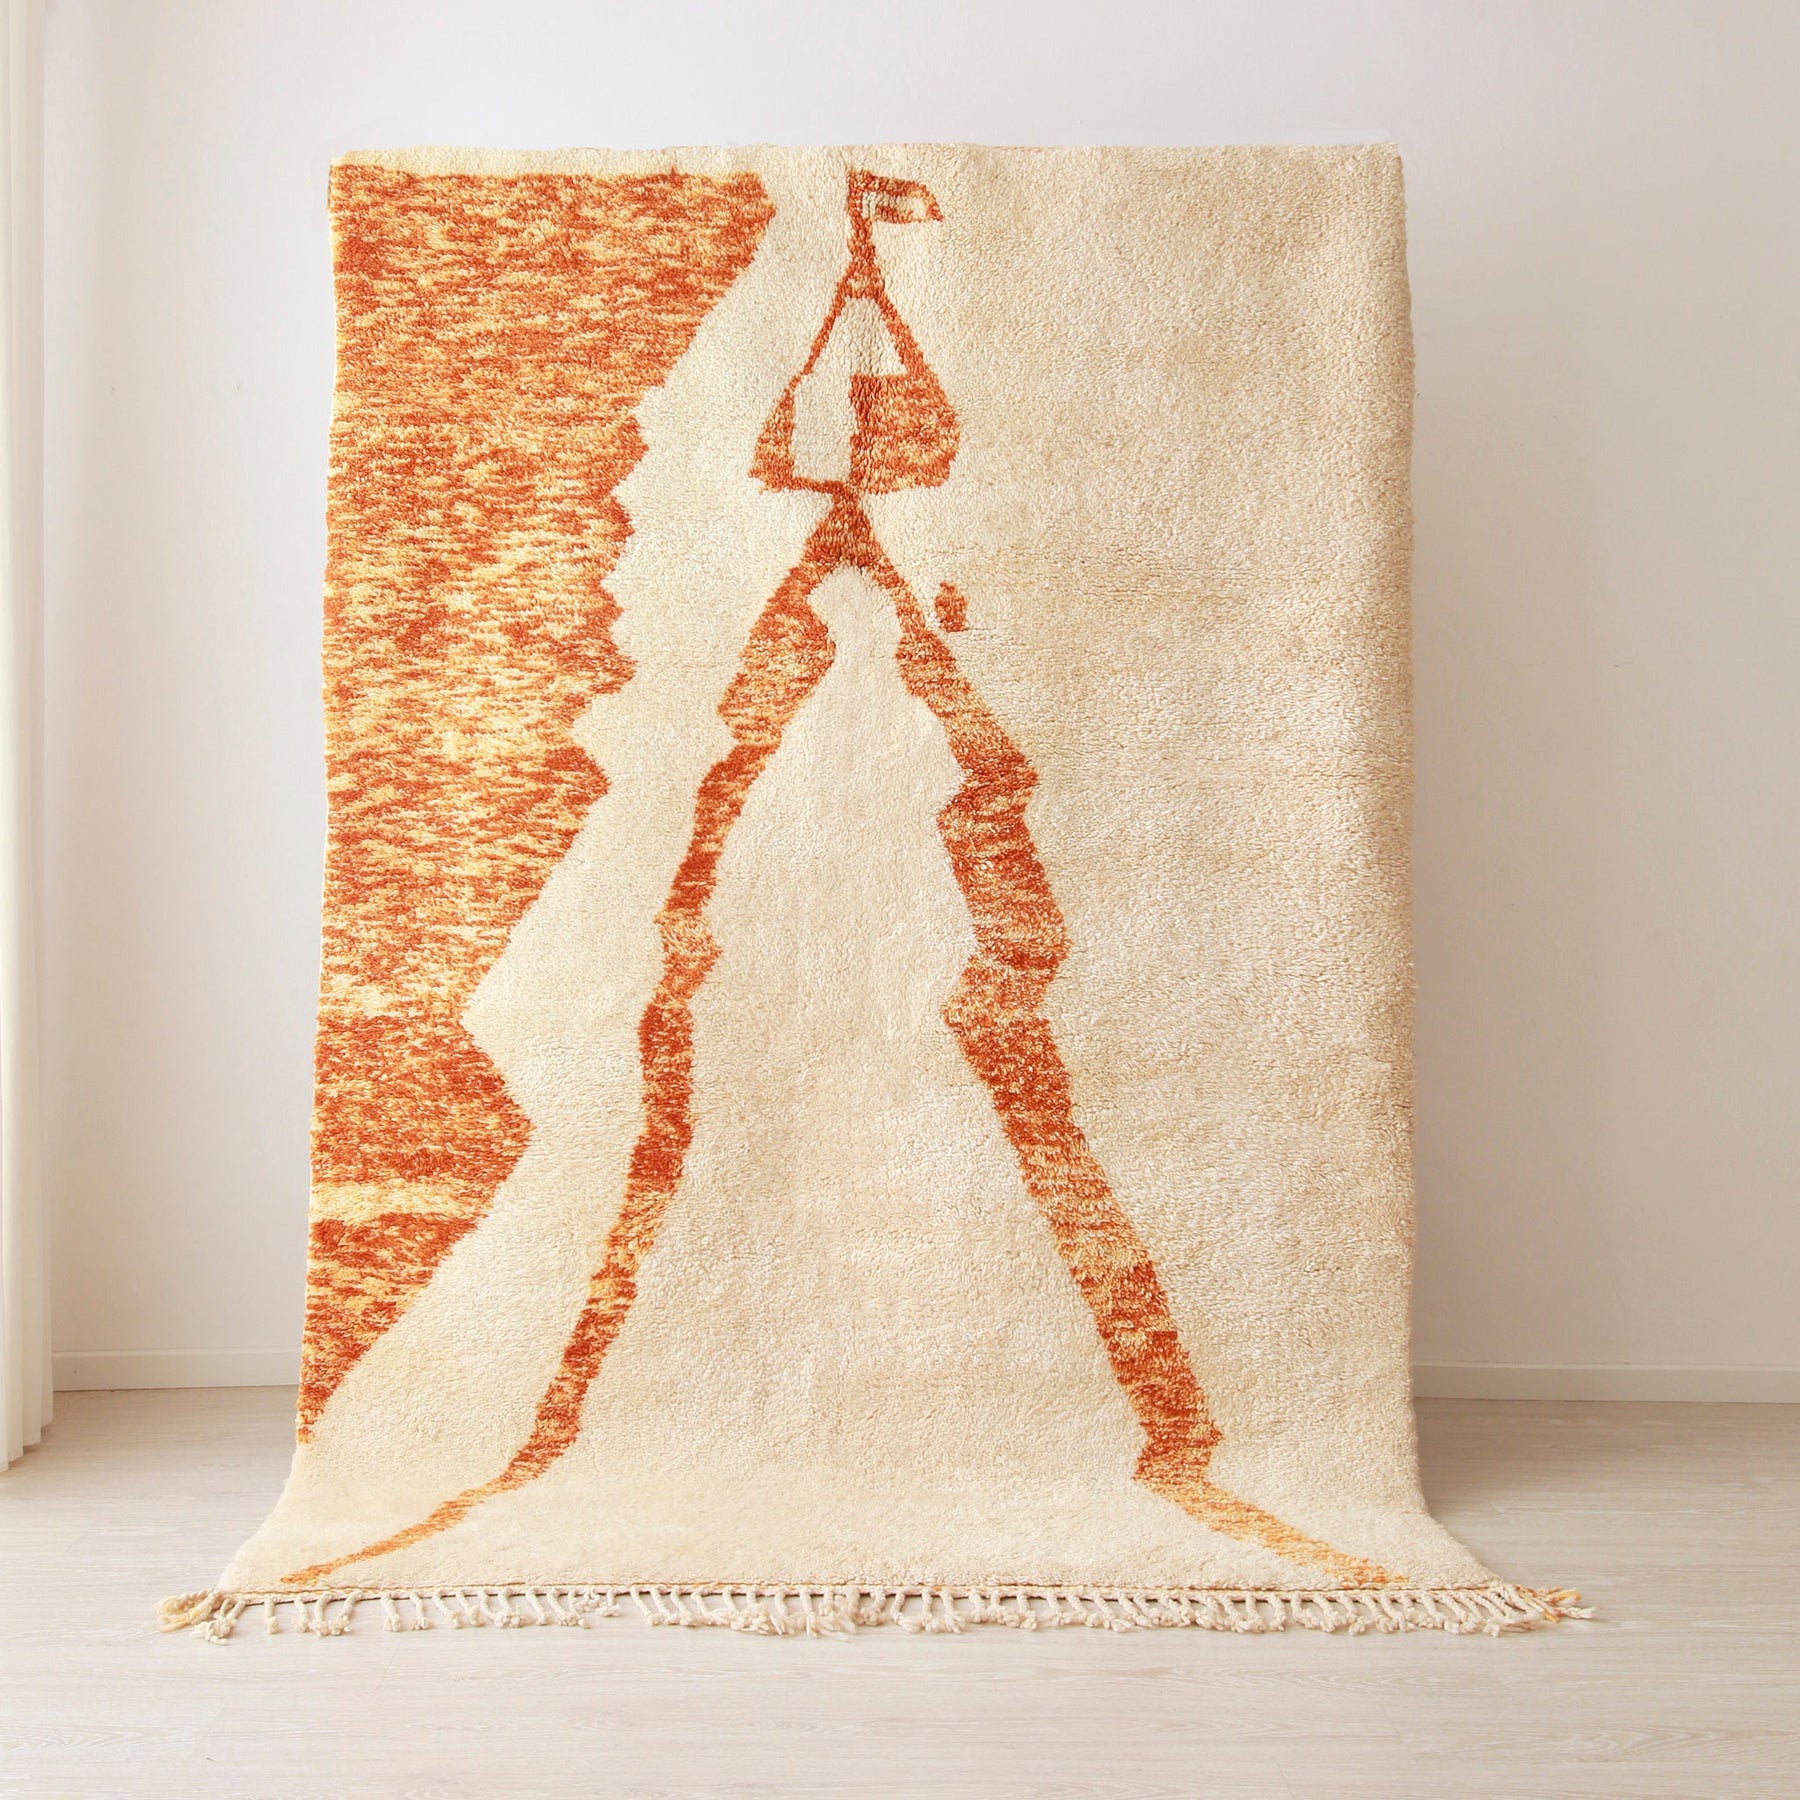 Tappeto beni mrirt tessuto a mano con una base di colore bianco e un raffigurazione stilizzata arancione di un sposa nel suo abito tradizionale . Il tappeto è appeso